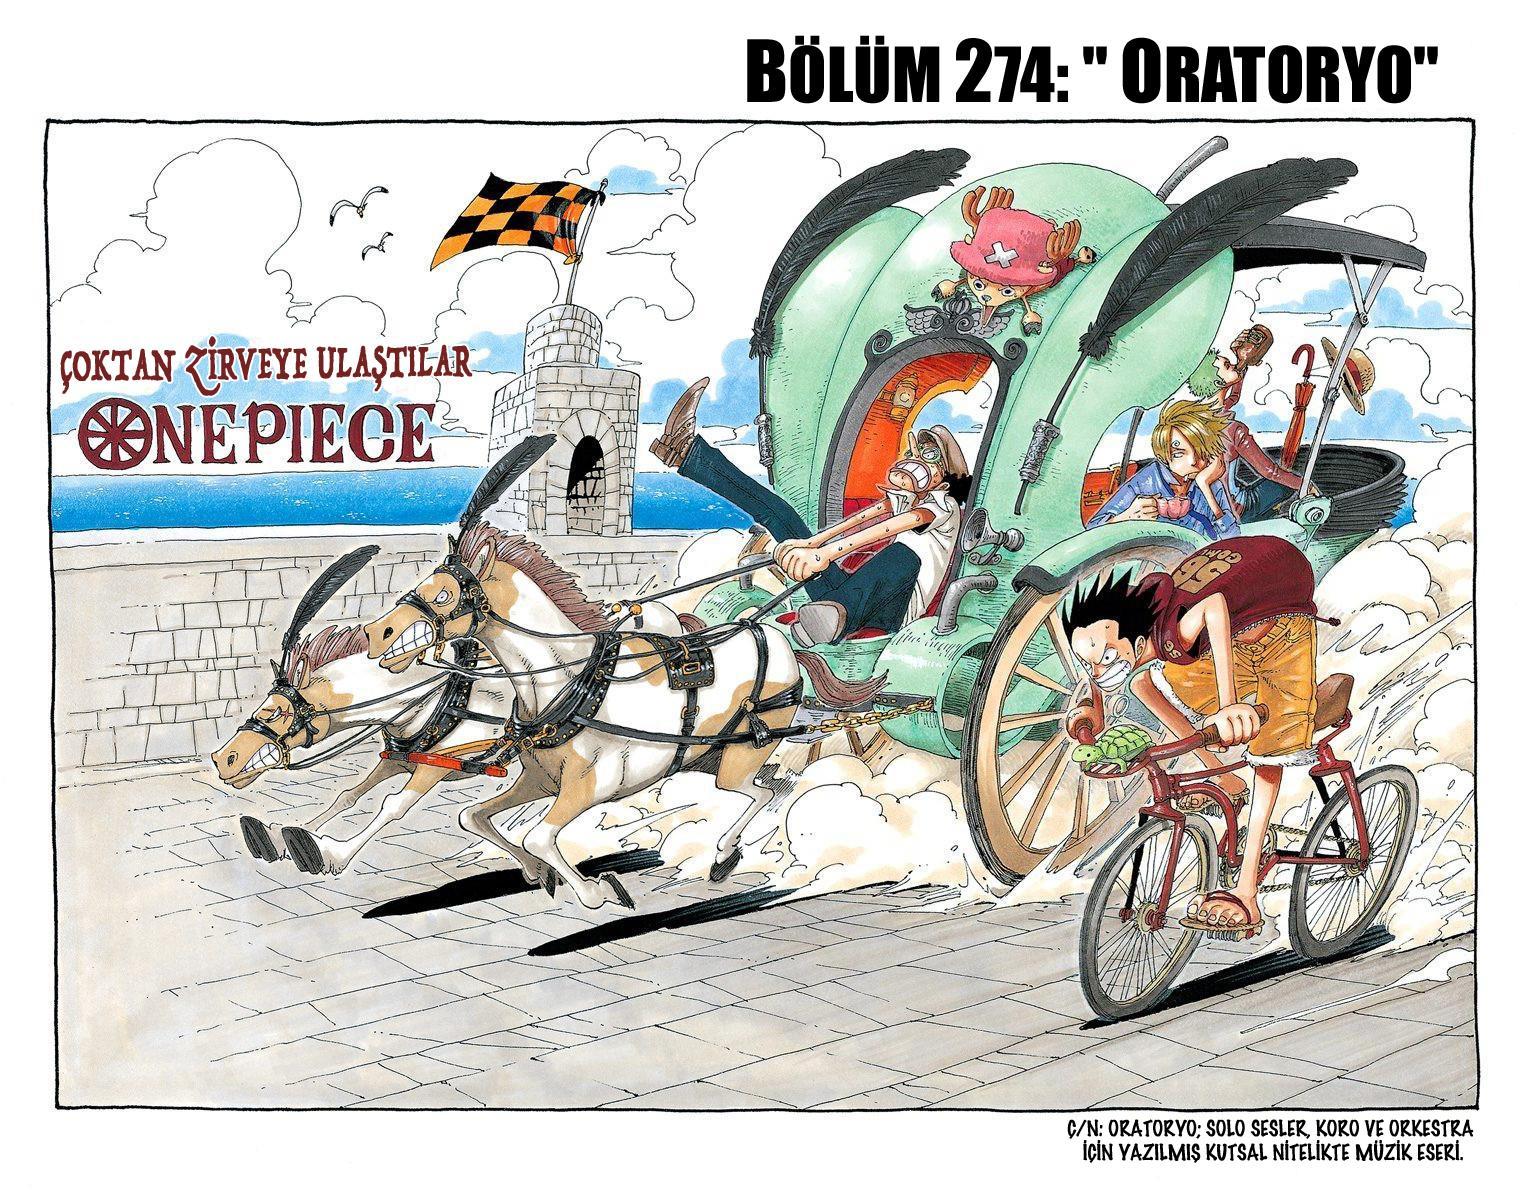 One Piece [Renkli] mangasının 0274 bölümünün 2. sayfasını okuyorsunuz.